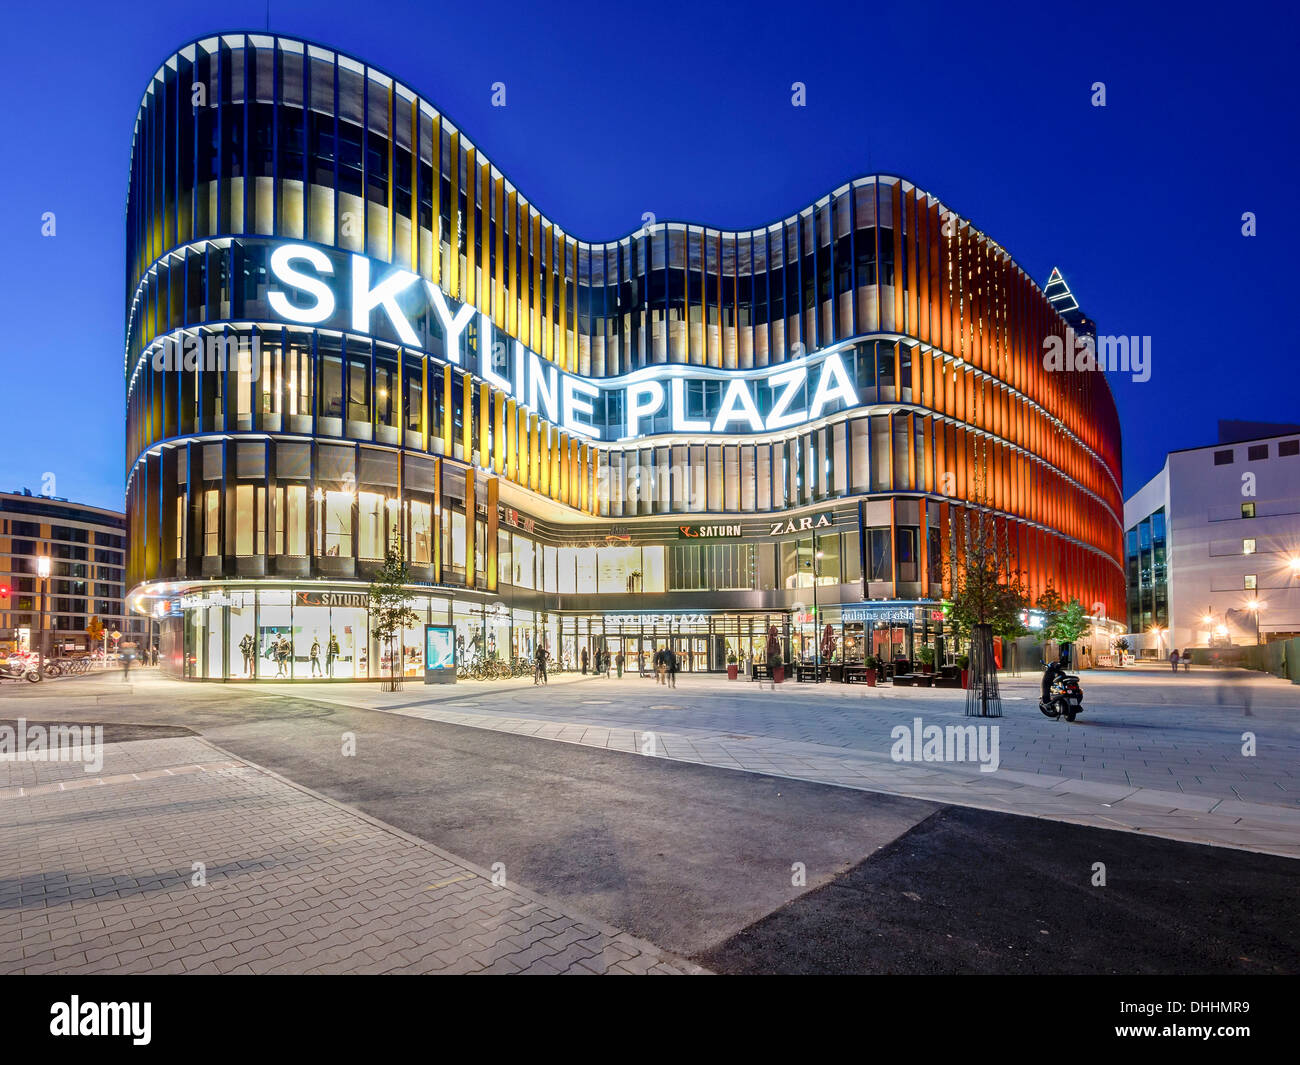 Neues Einkaufszentrum Skyline Plaza, Europaviertel, Frankfurt Am Main,  Hessen, Deutschland Stockfotografie - Alamy